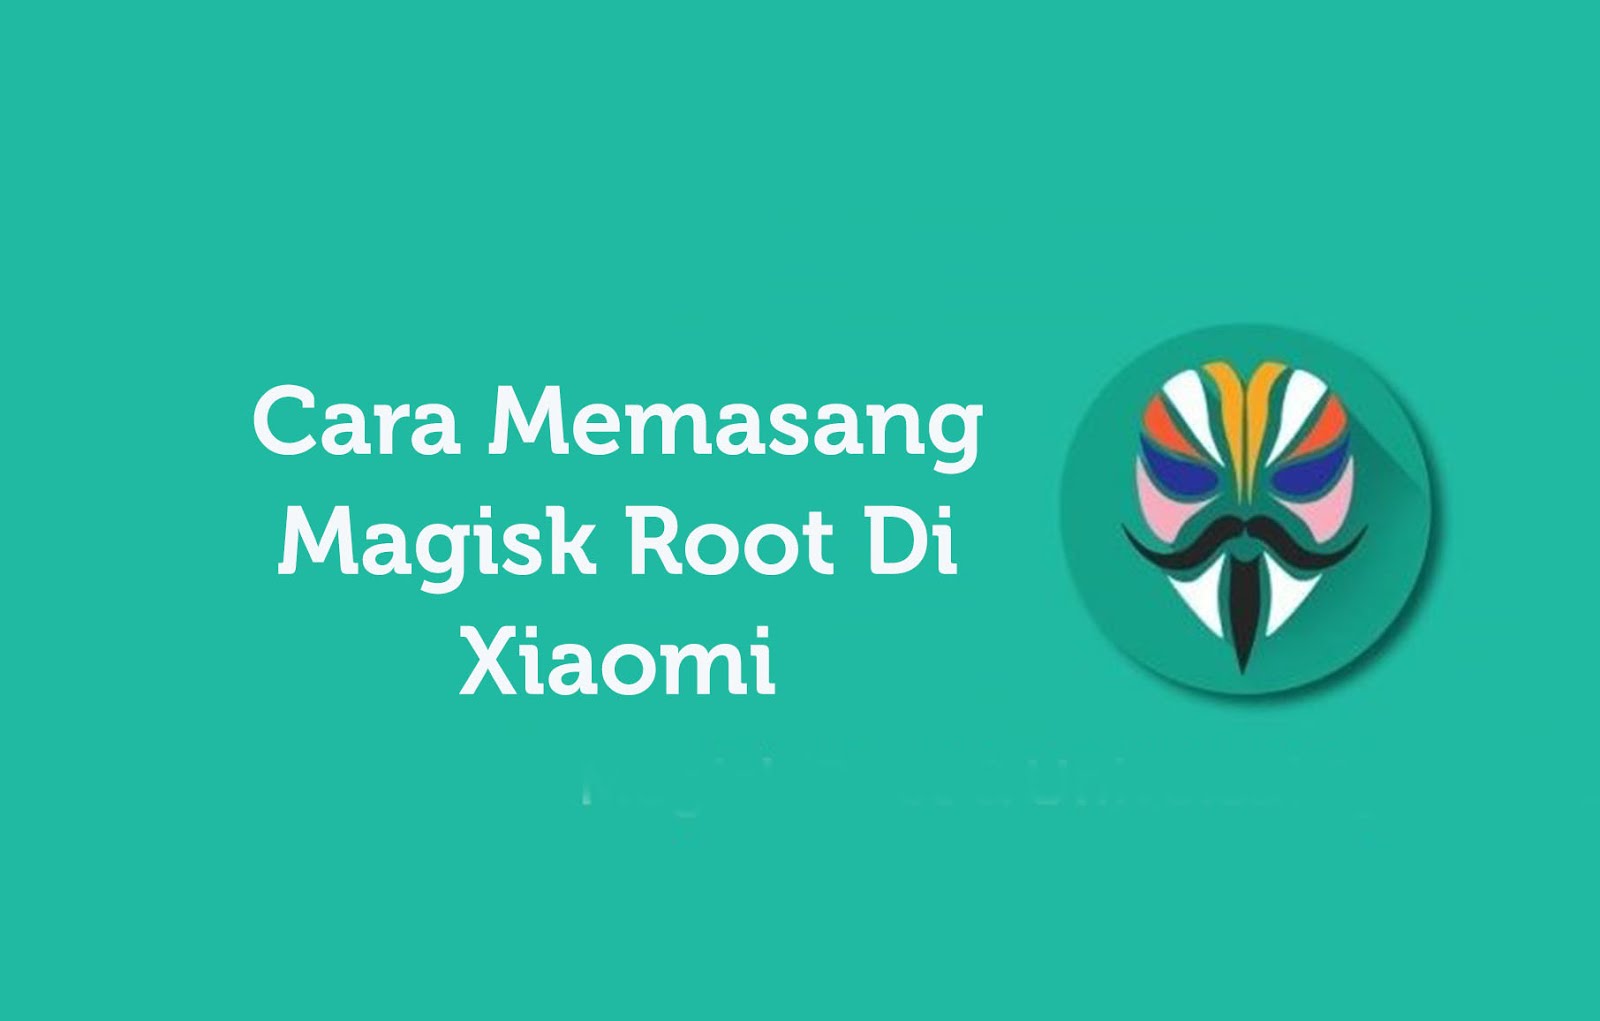 Cara Memasang Magisk Root Di Xiaomi